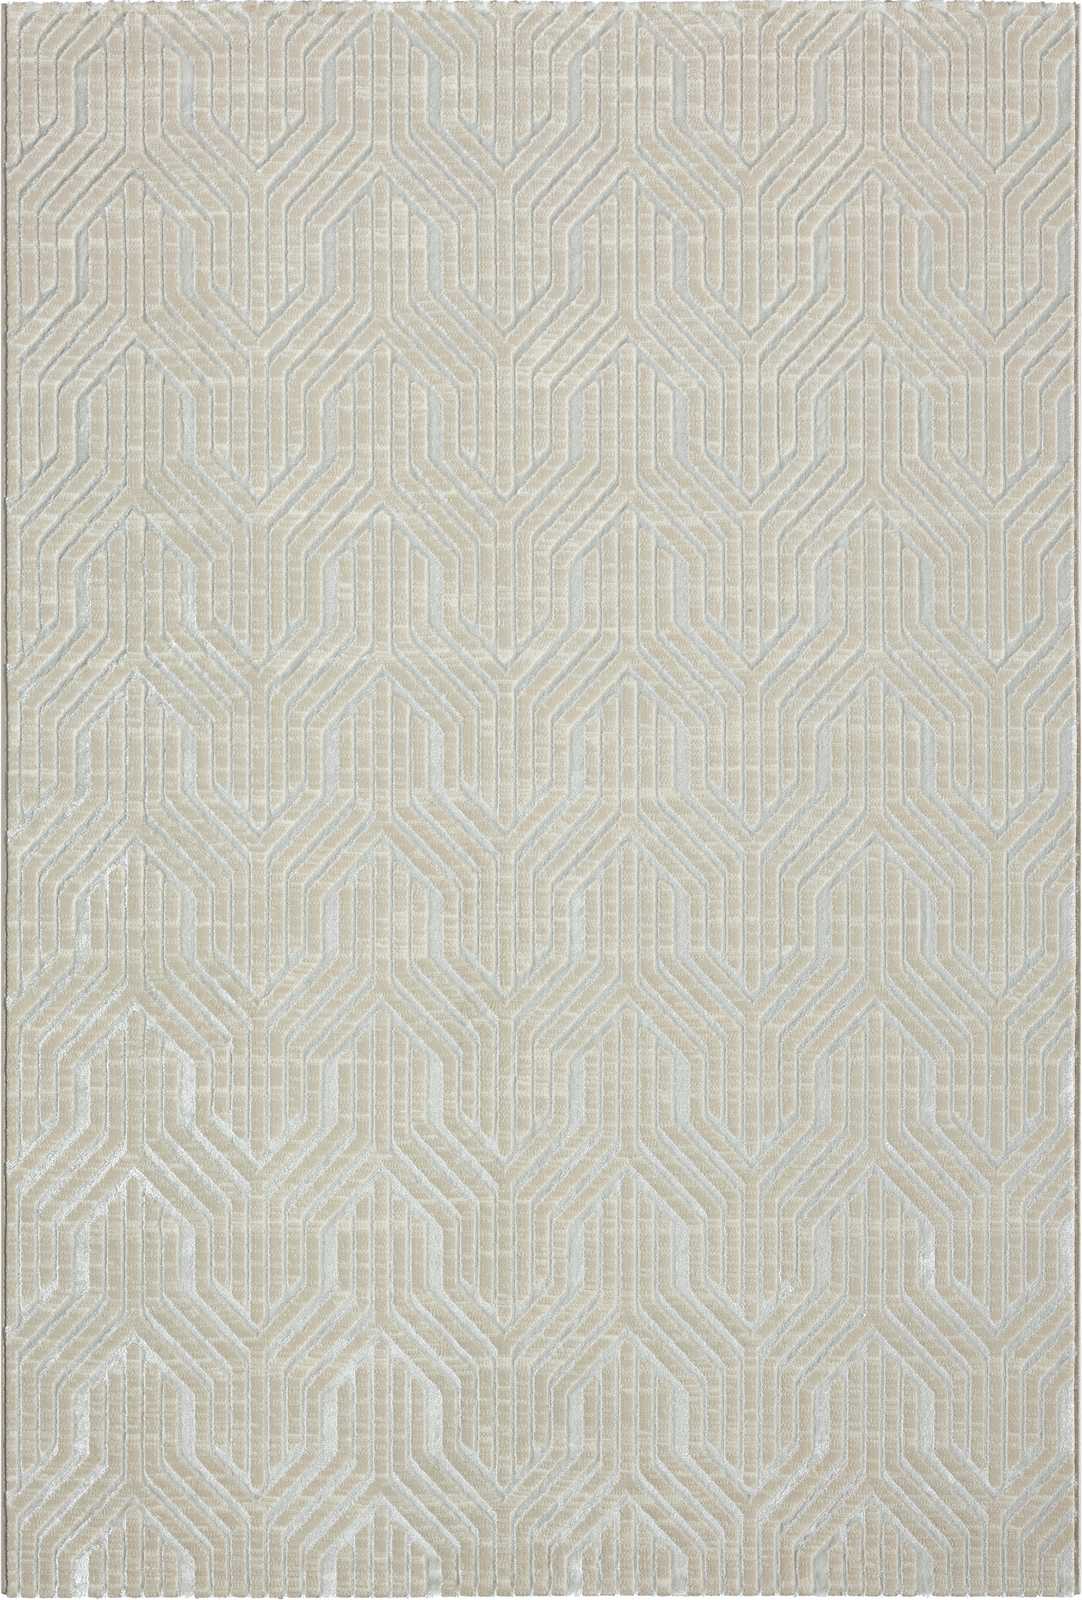             Sanfter Hochflor Teppich in Creme – 150 x 80 cm
        